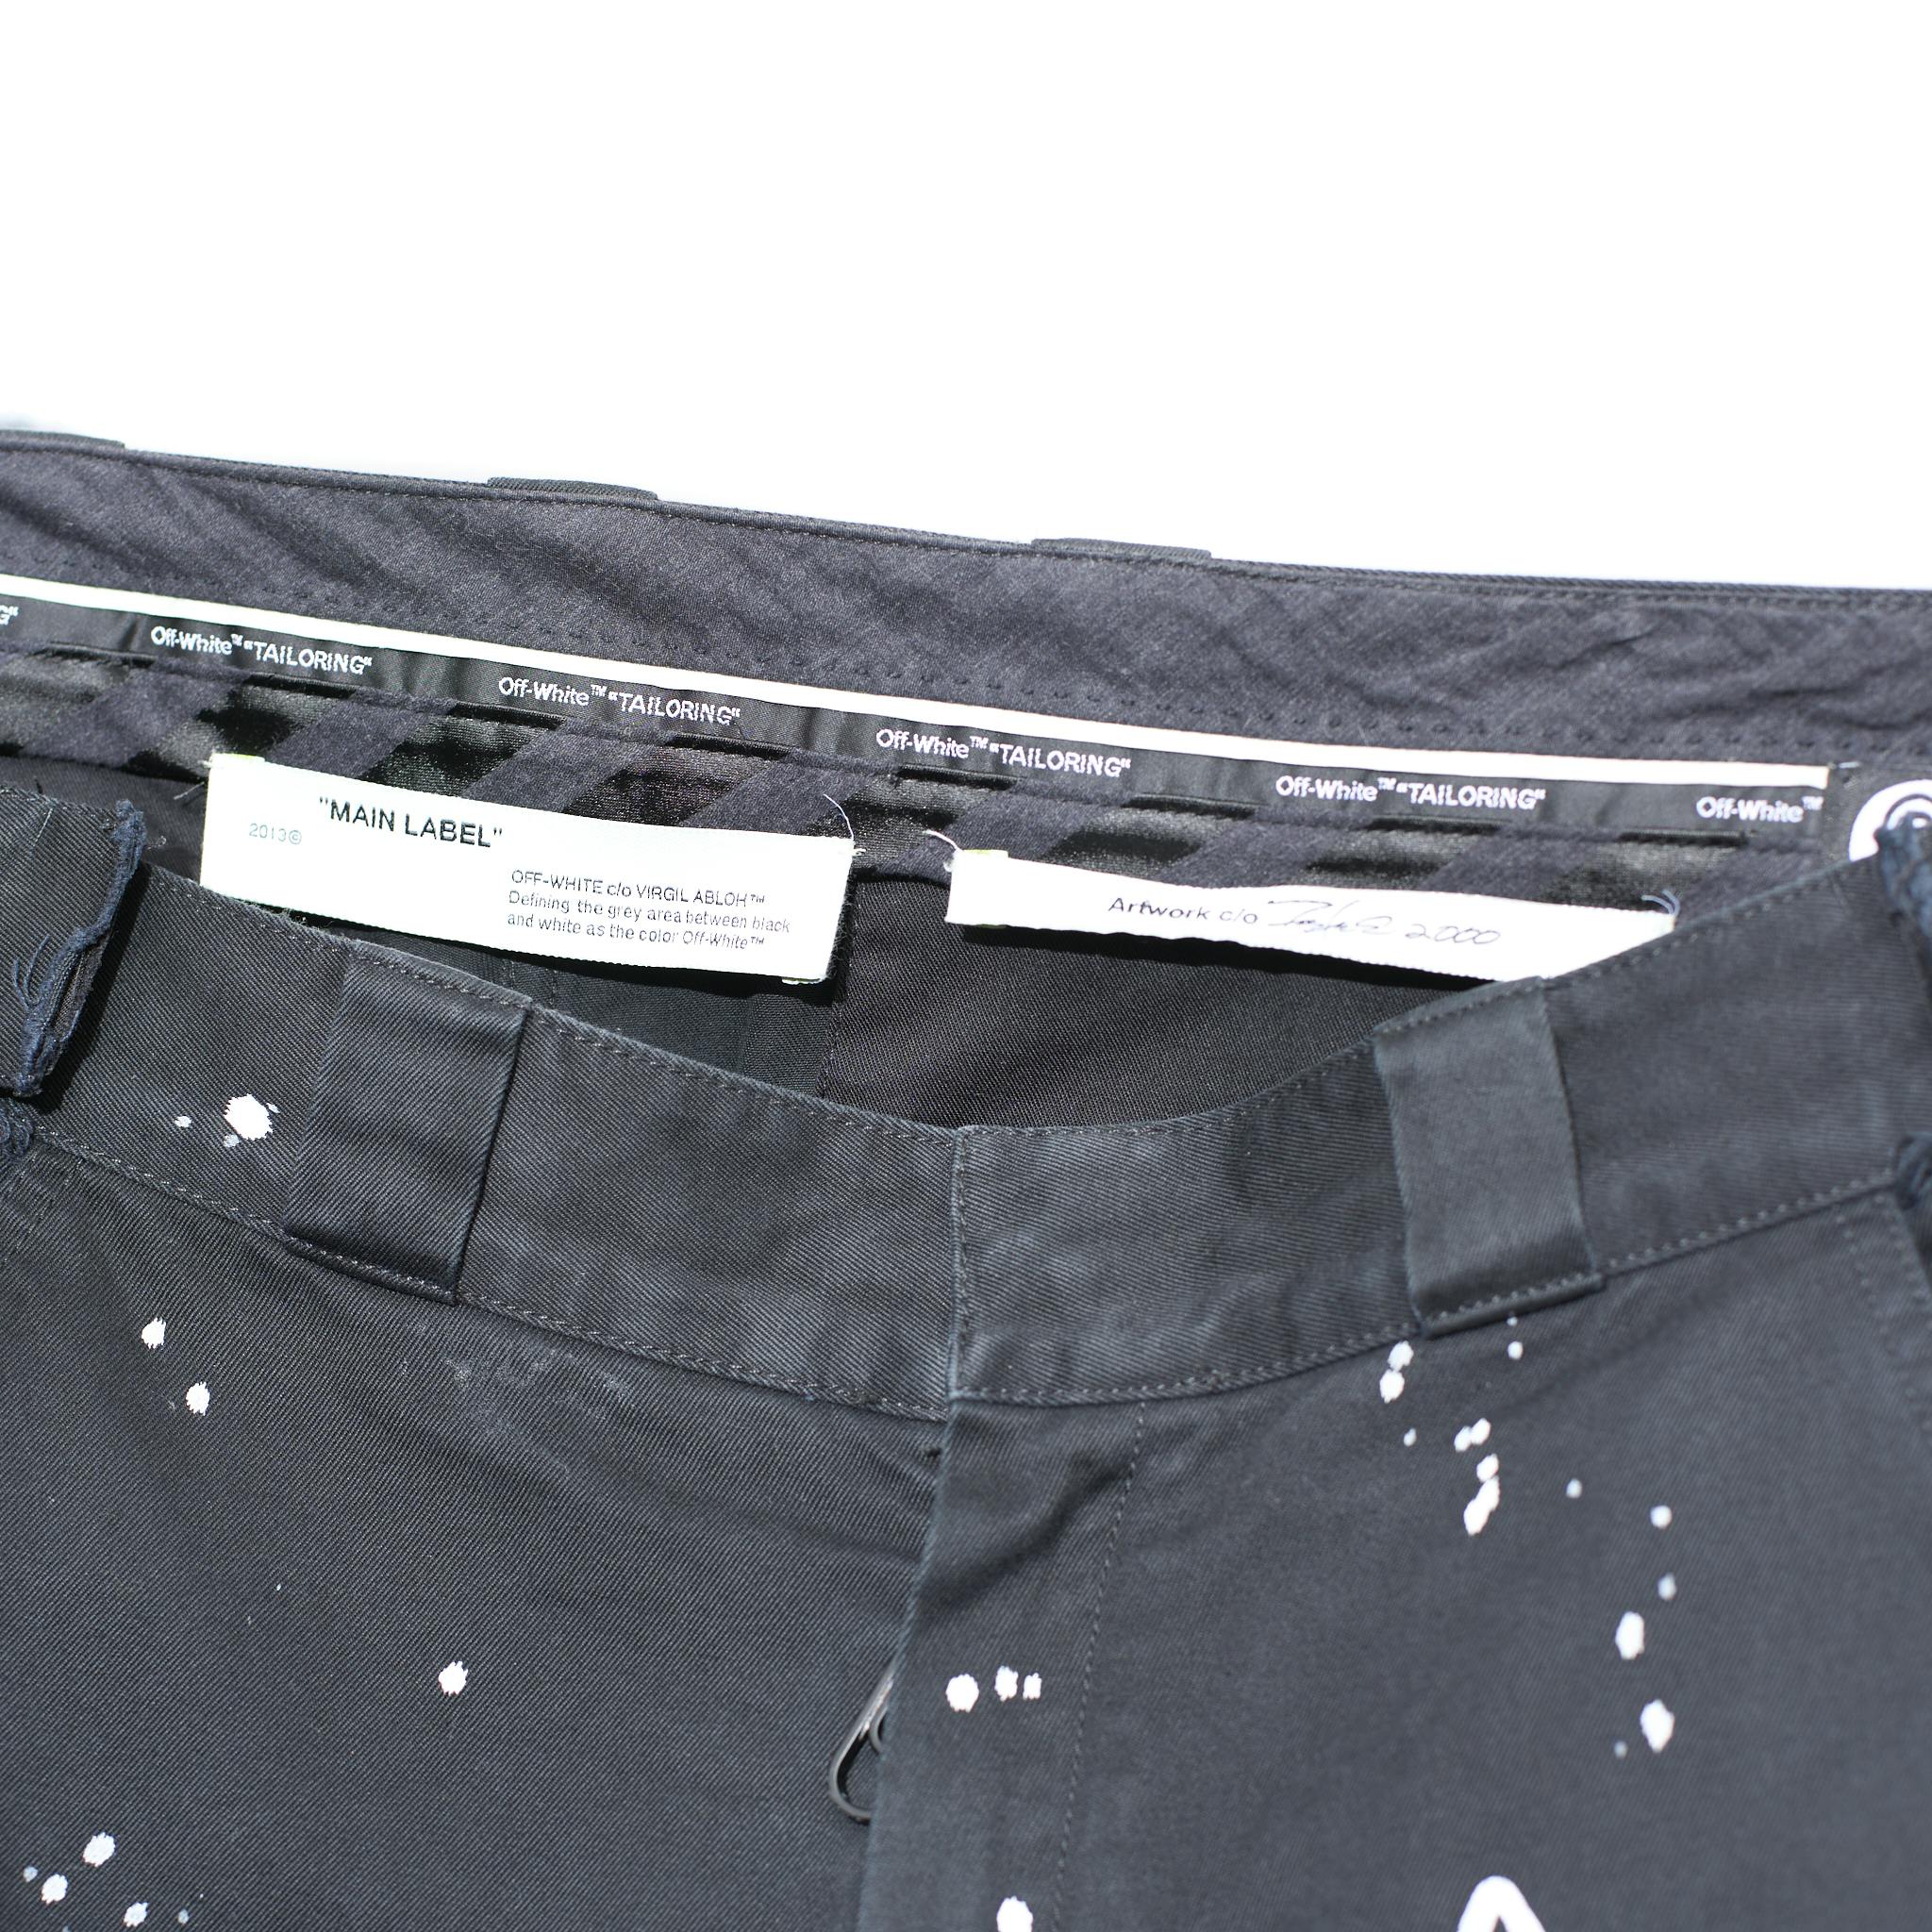 Off White Futura Laboratories Alien Trousers Size 38 - 5